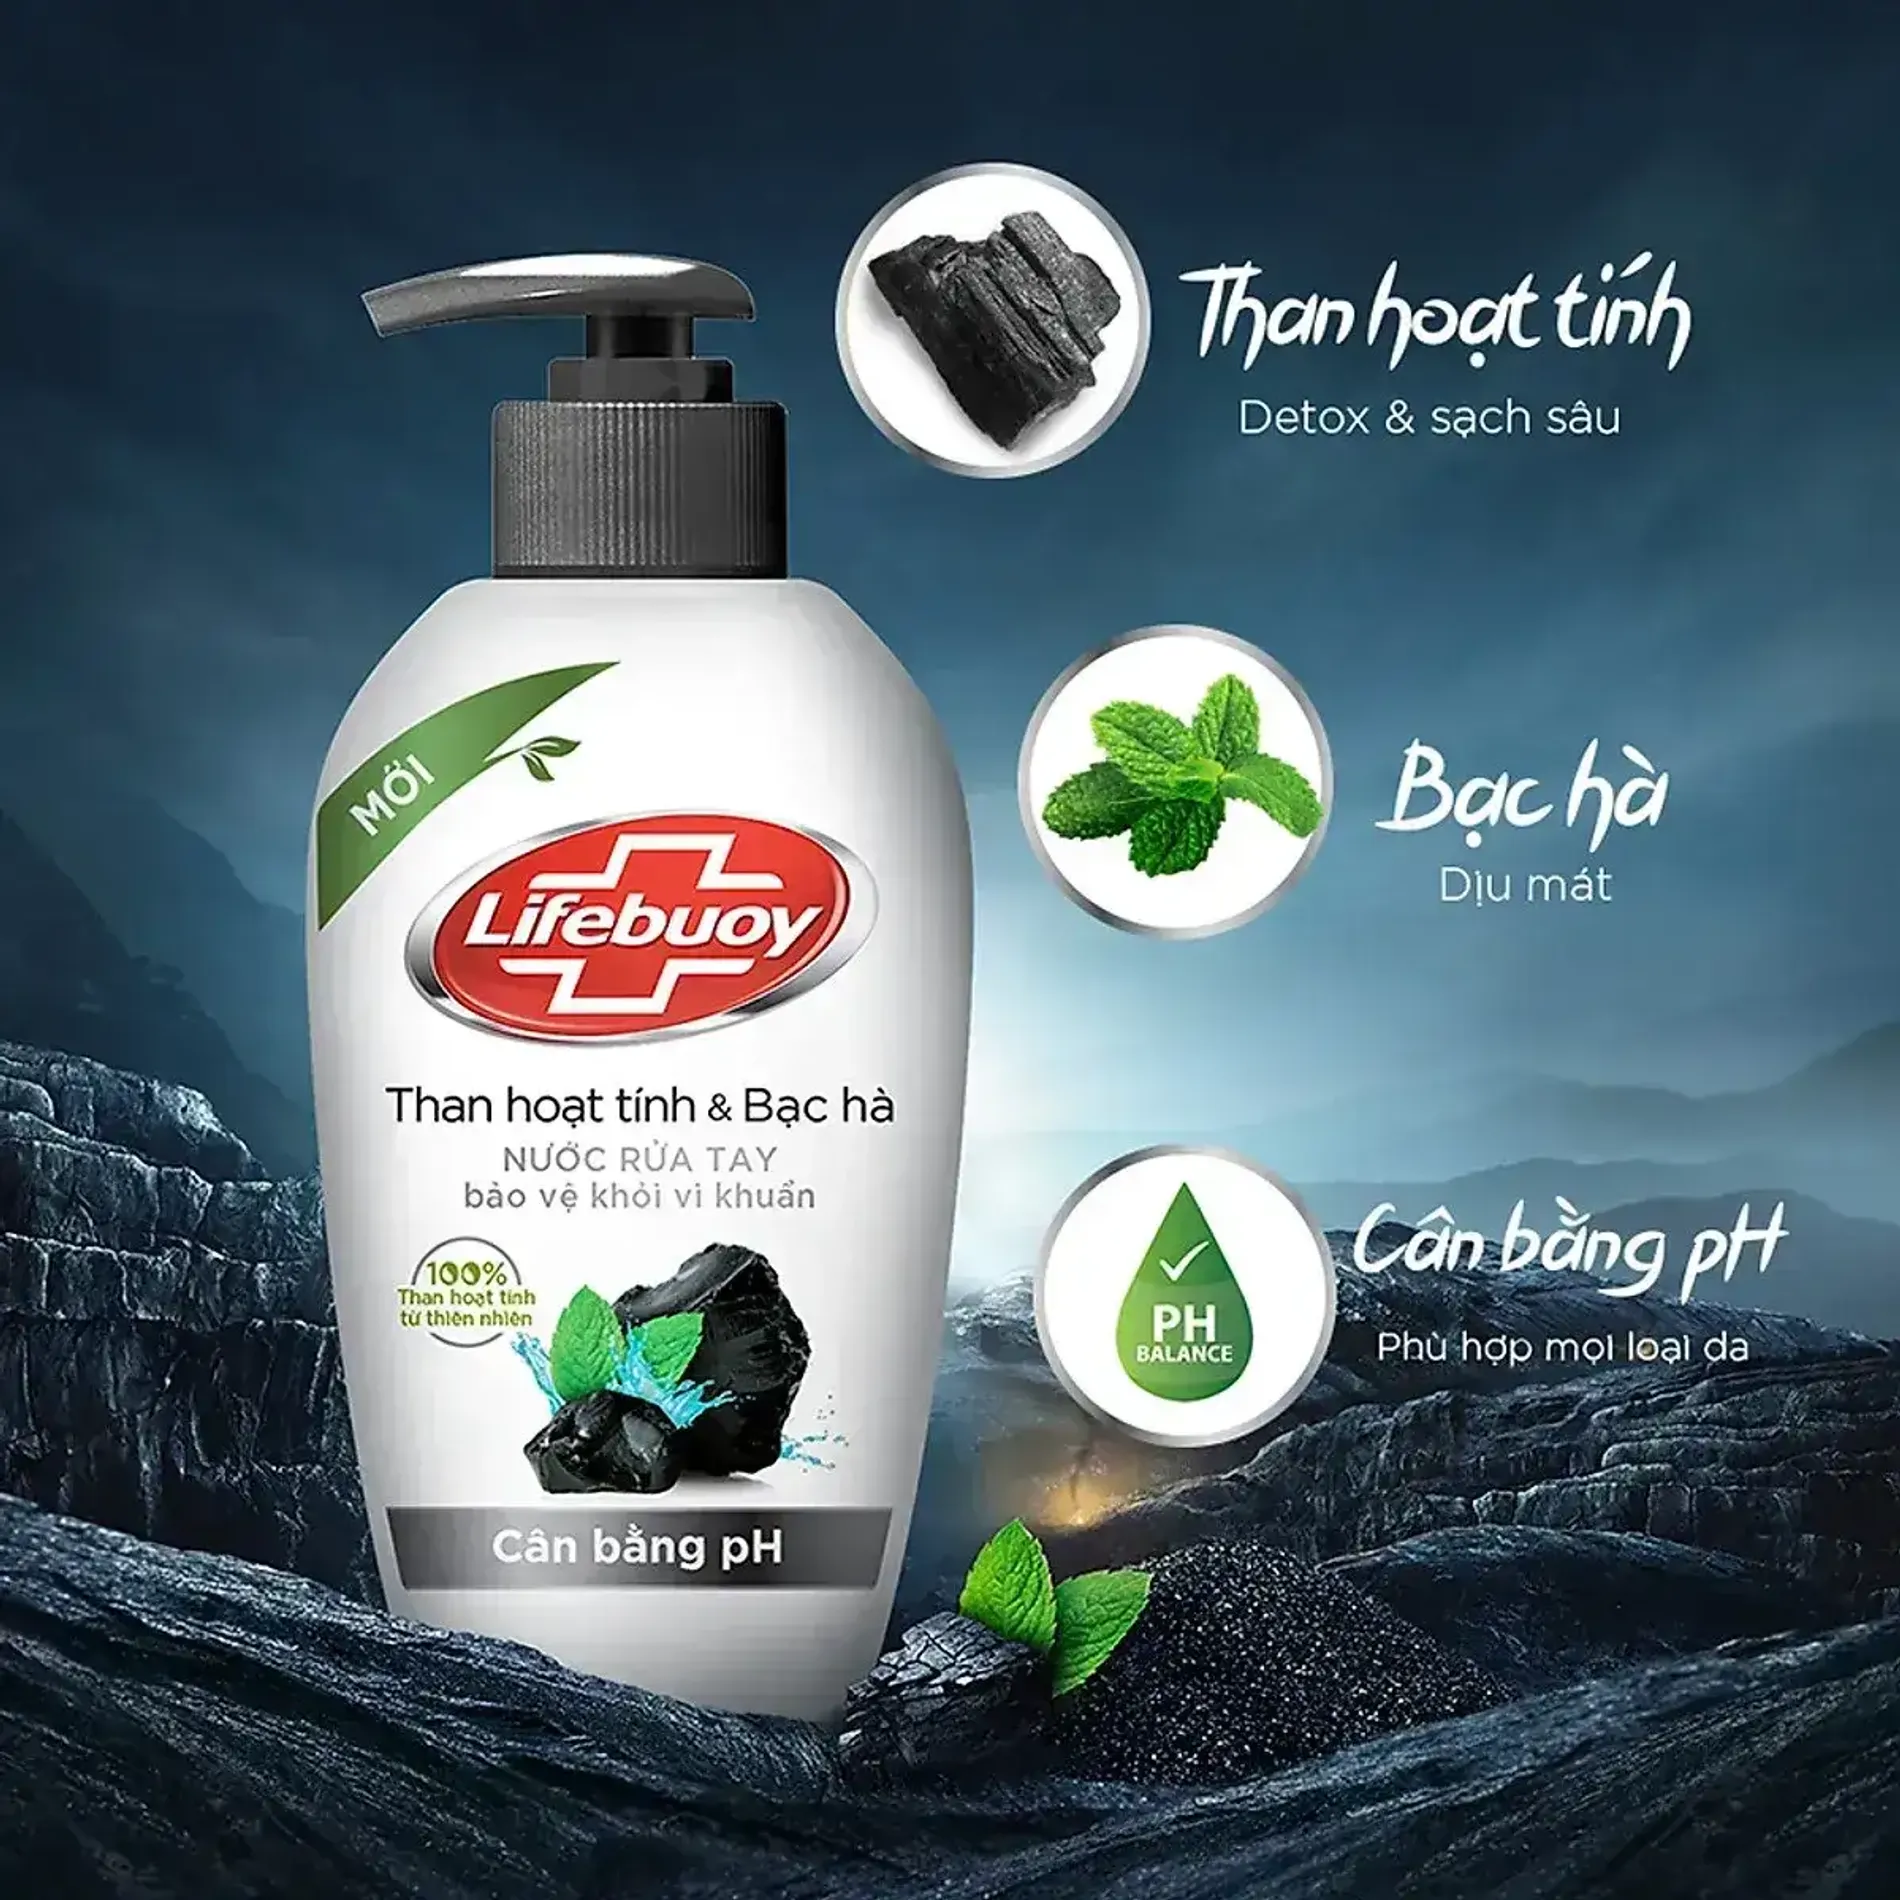 nuoc-rua-tay-than-hoat-tinh-va-bac-ha-lifebuoy-liquid-hand-soap-charcoal-mint-1